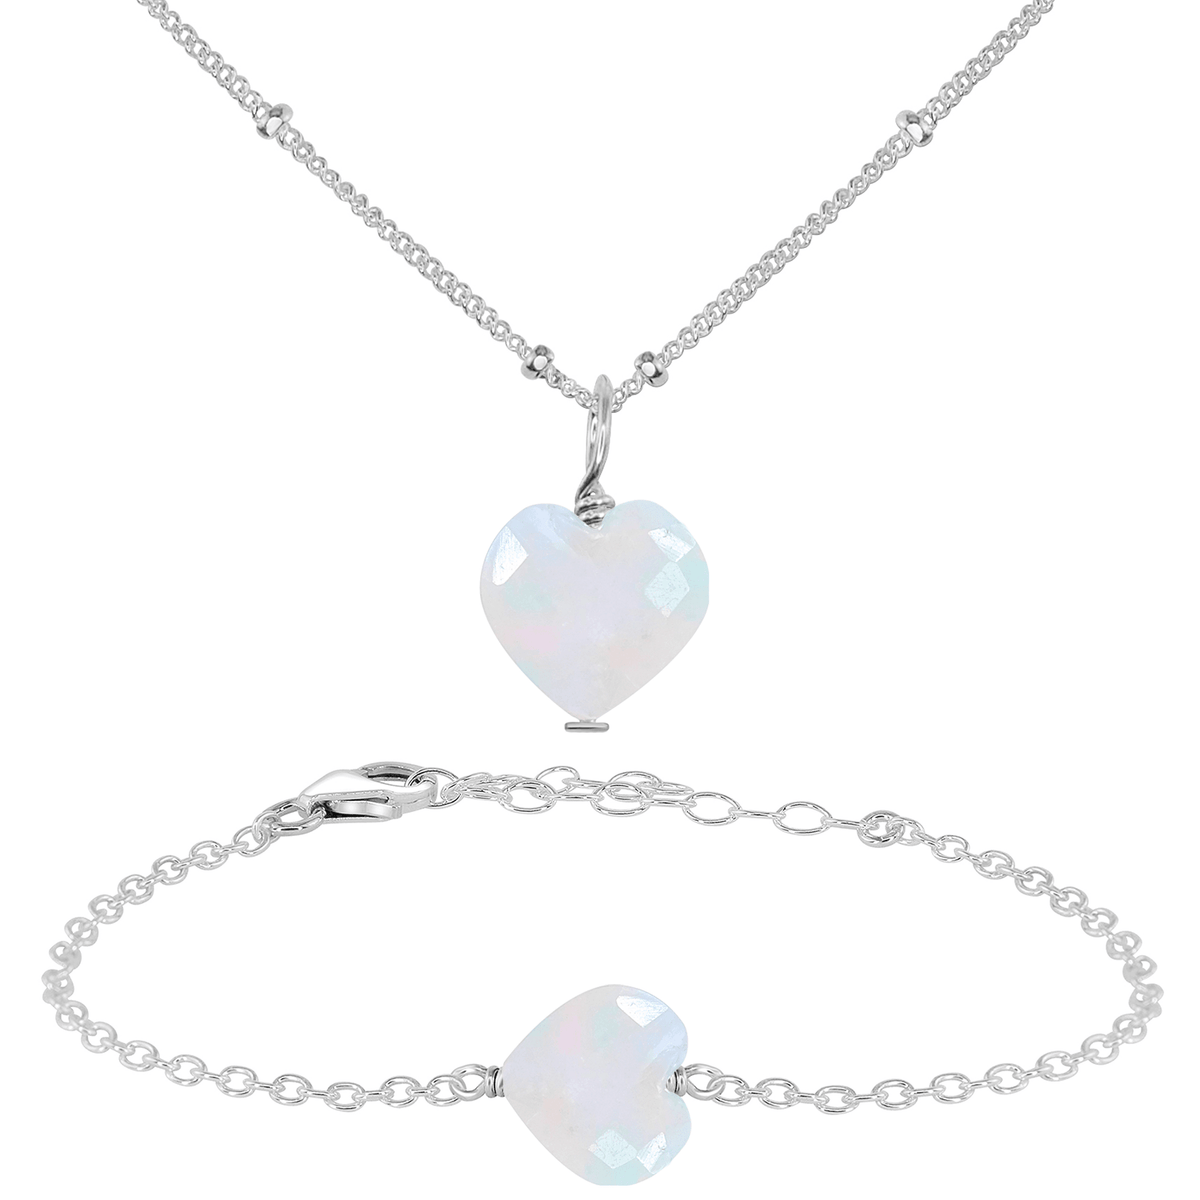 Rainbow Moonstone Crystal Heart Jewellery Set - Rainbow Moonstone Crystal Heart Jewellery Set - Sterling Silver / Satellite / Necklace & Bracelet - Luna Tide Handmade Crystal Jewellery